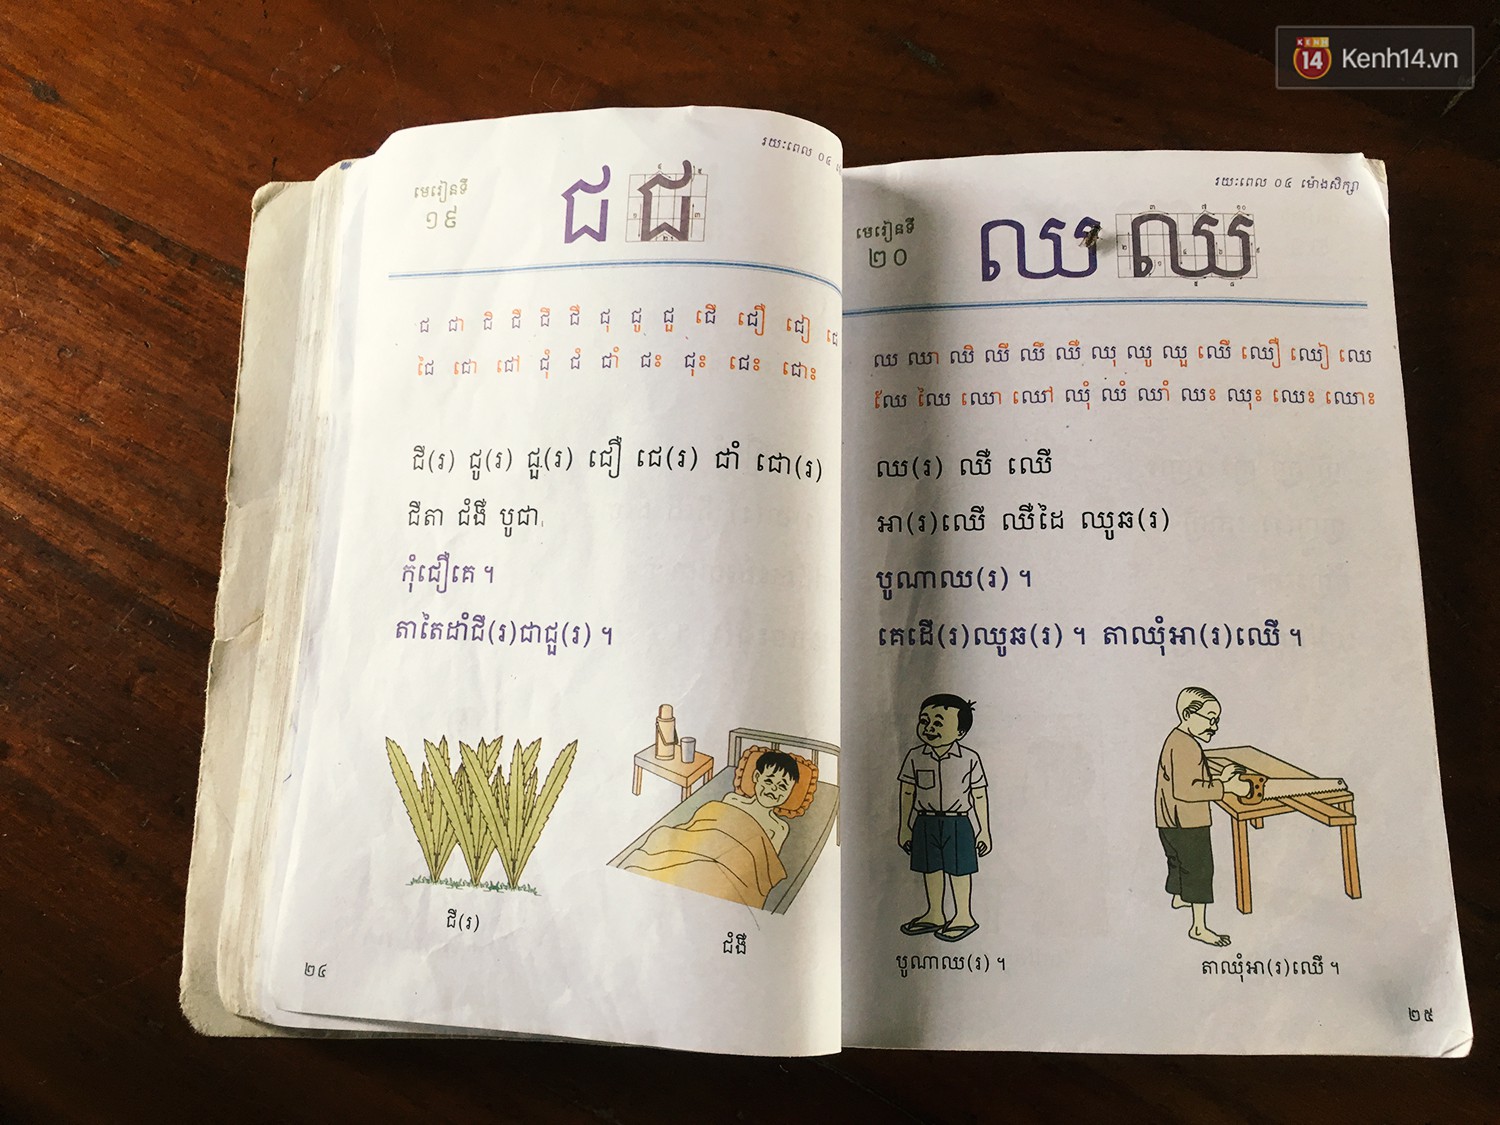 Chùm ảnh: Lớp học của những đứa trẻ Việt kiều không quốc tịch ở Biển Hồ Campuchia - Ảnh 13.